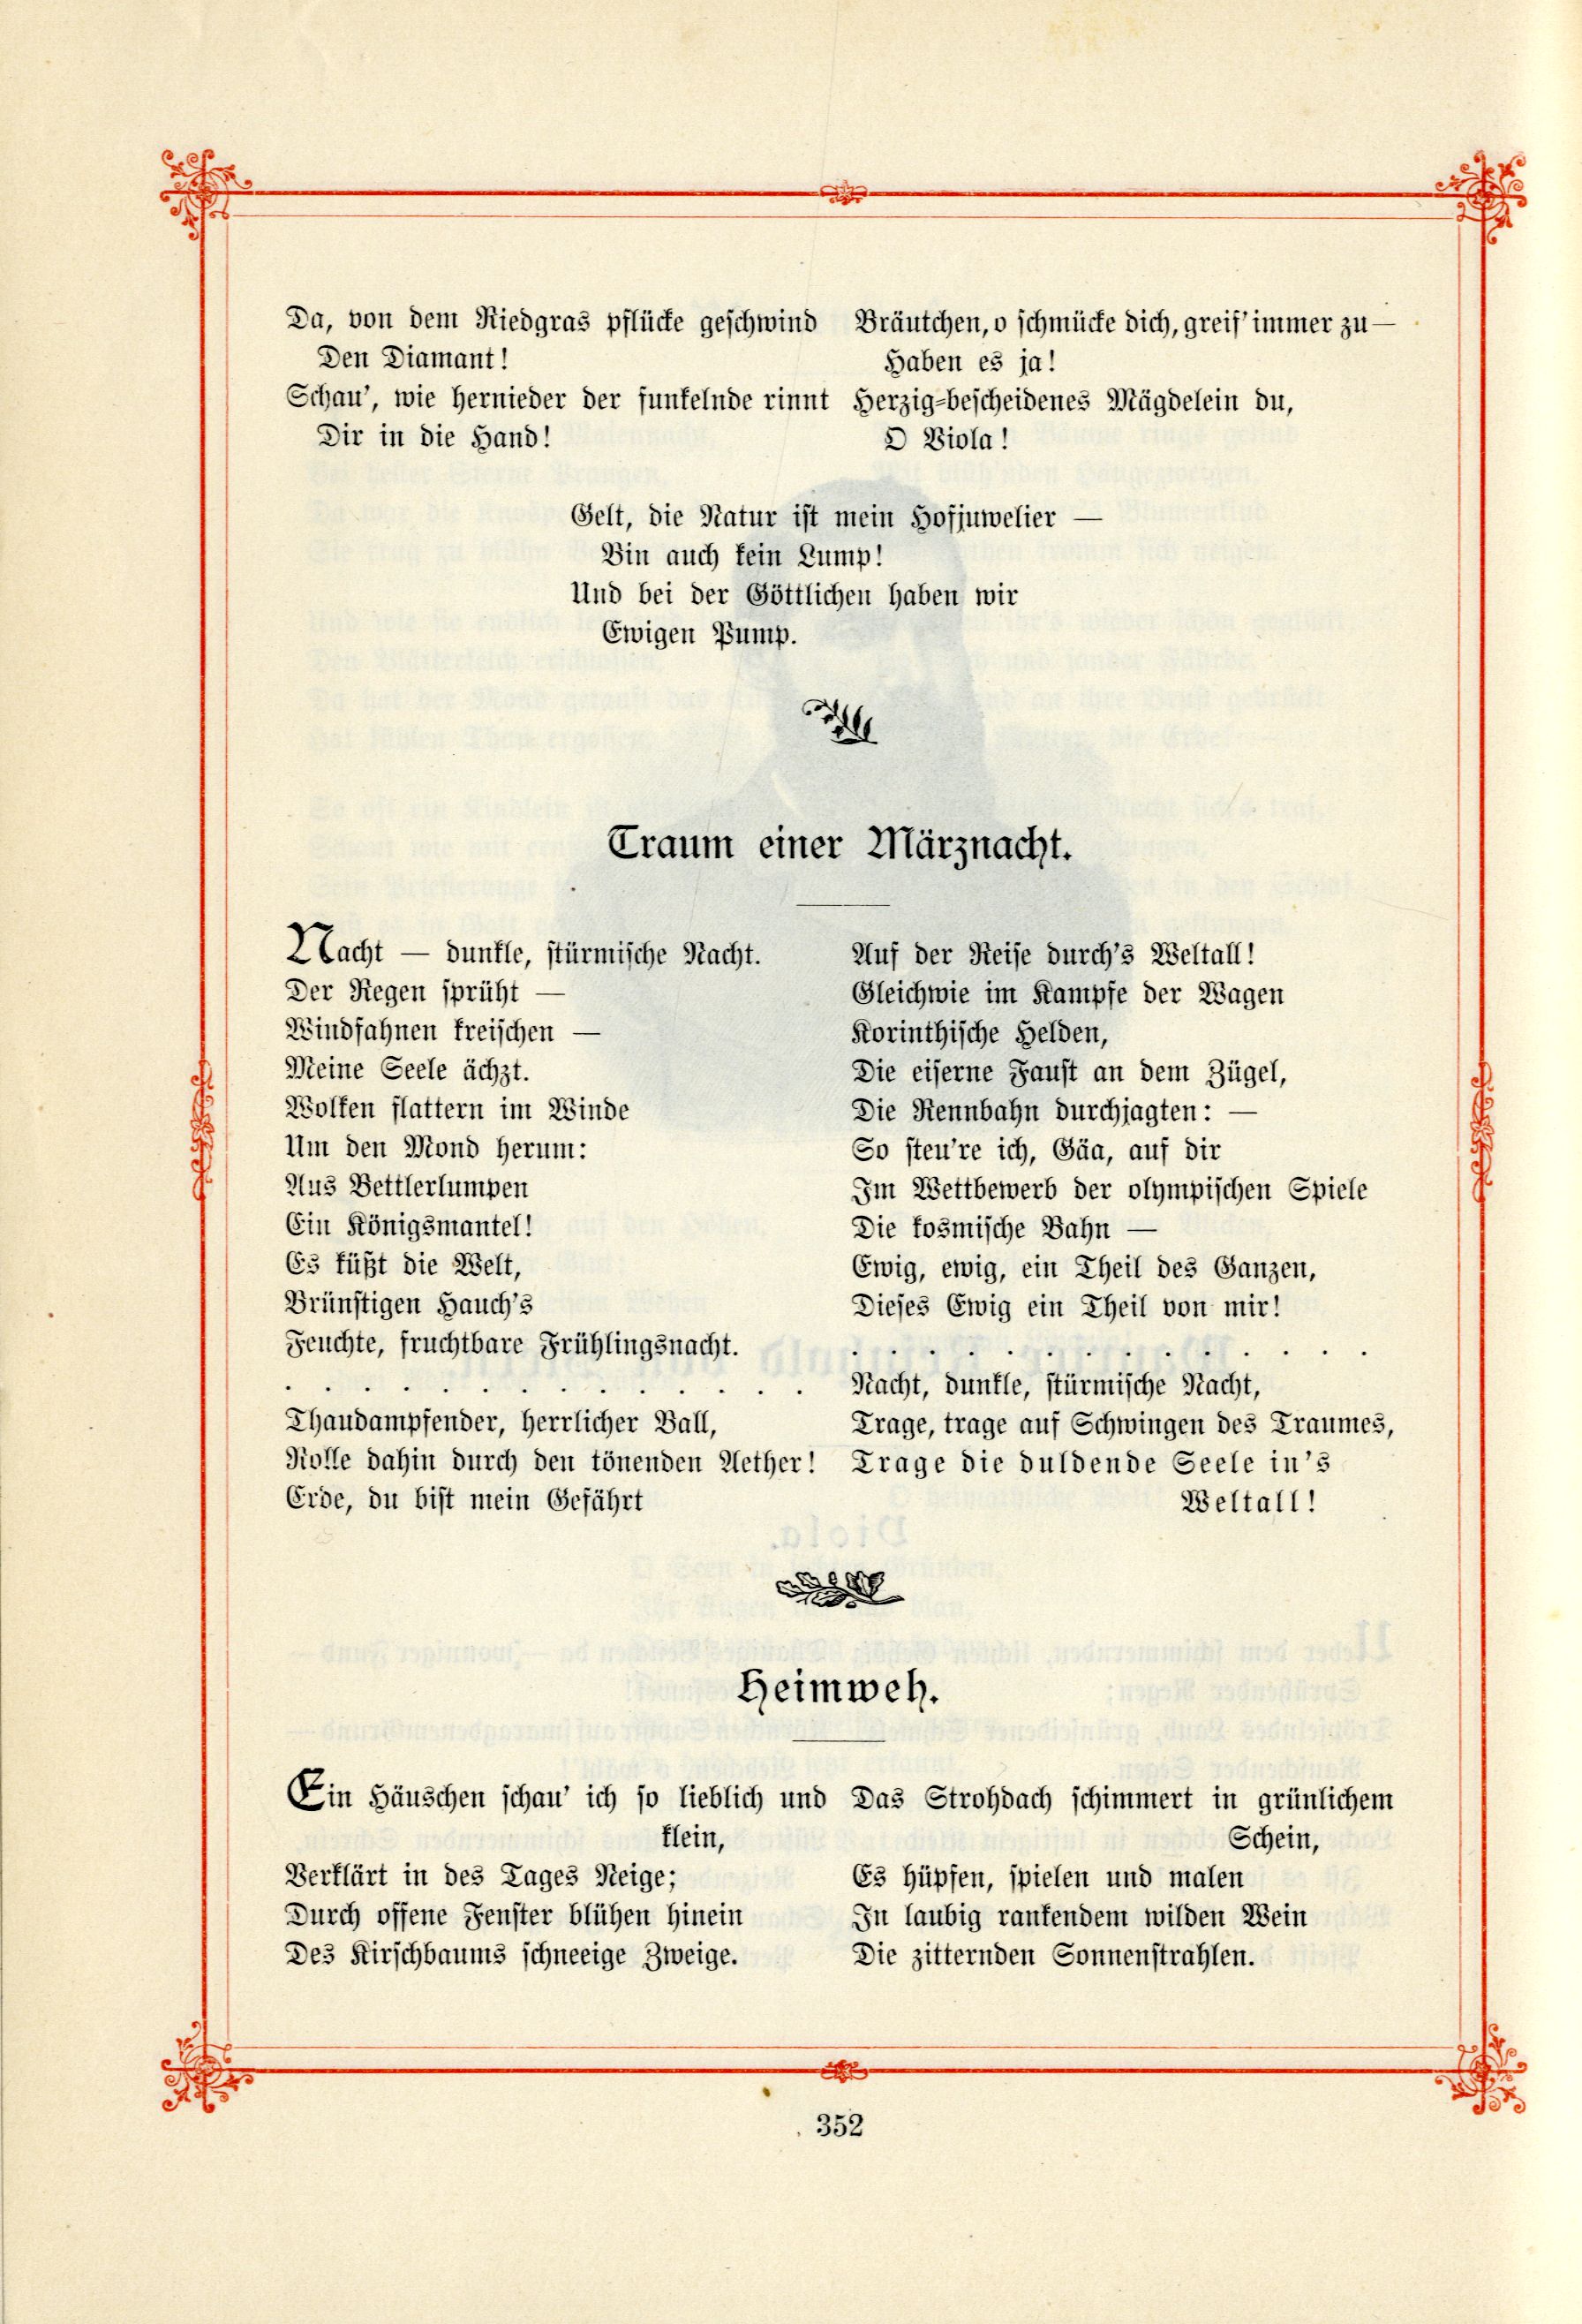 Das Baltische Dichterbuch (1895) | 398. (352) Main body of text